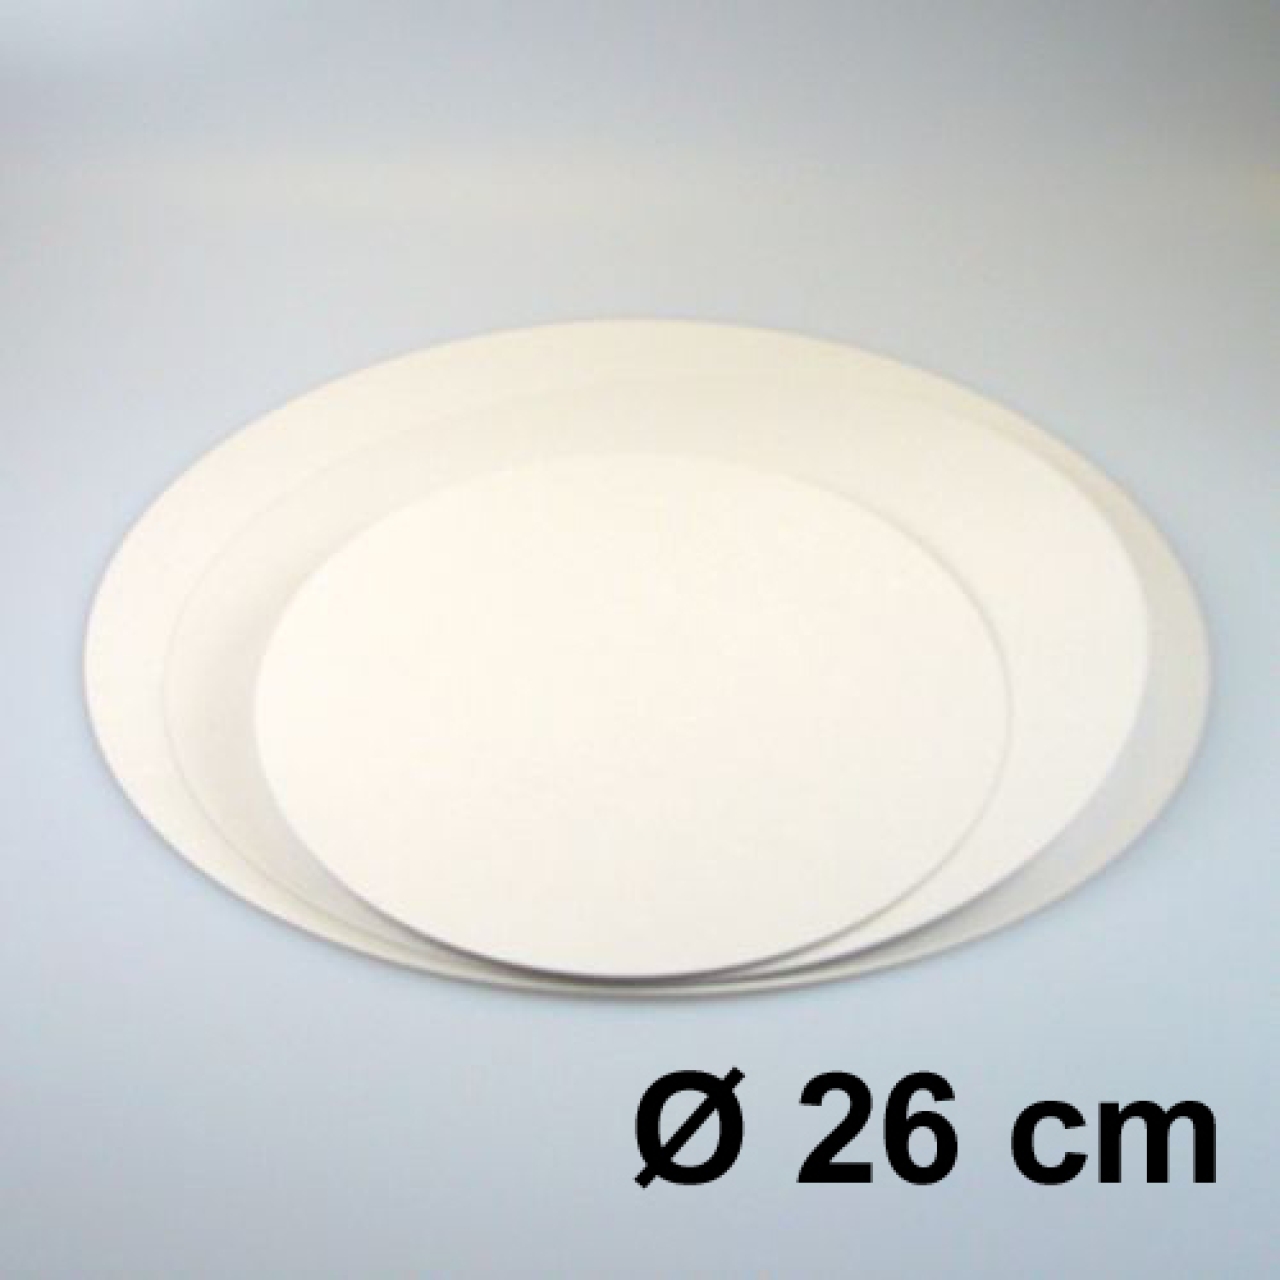 Tortenscheiben 26 cm Weiß